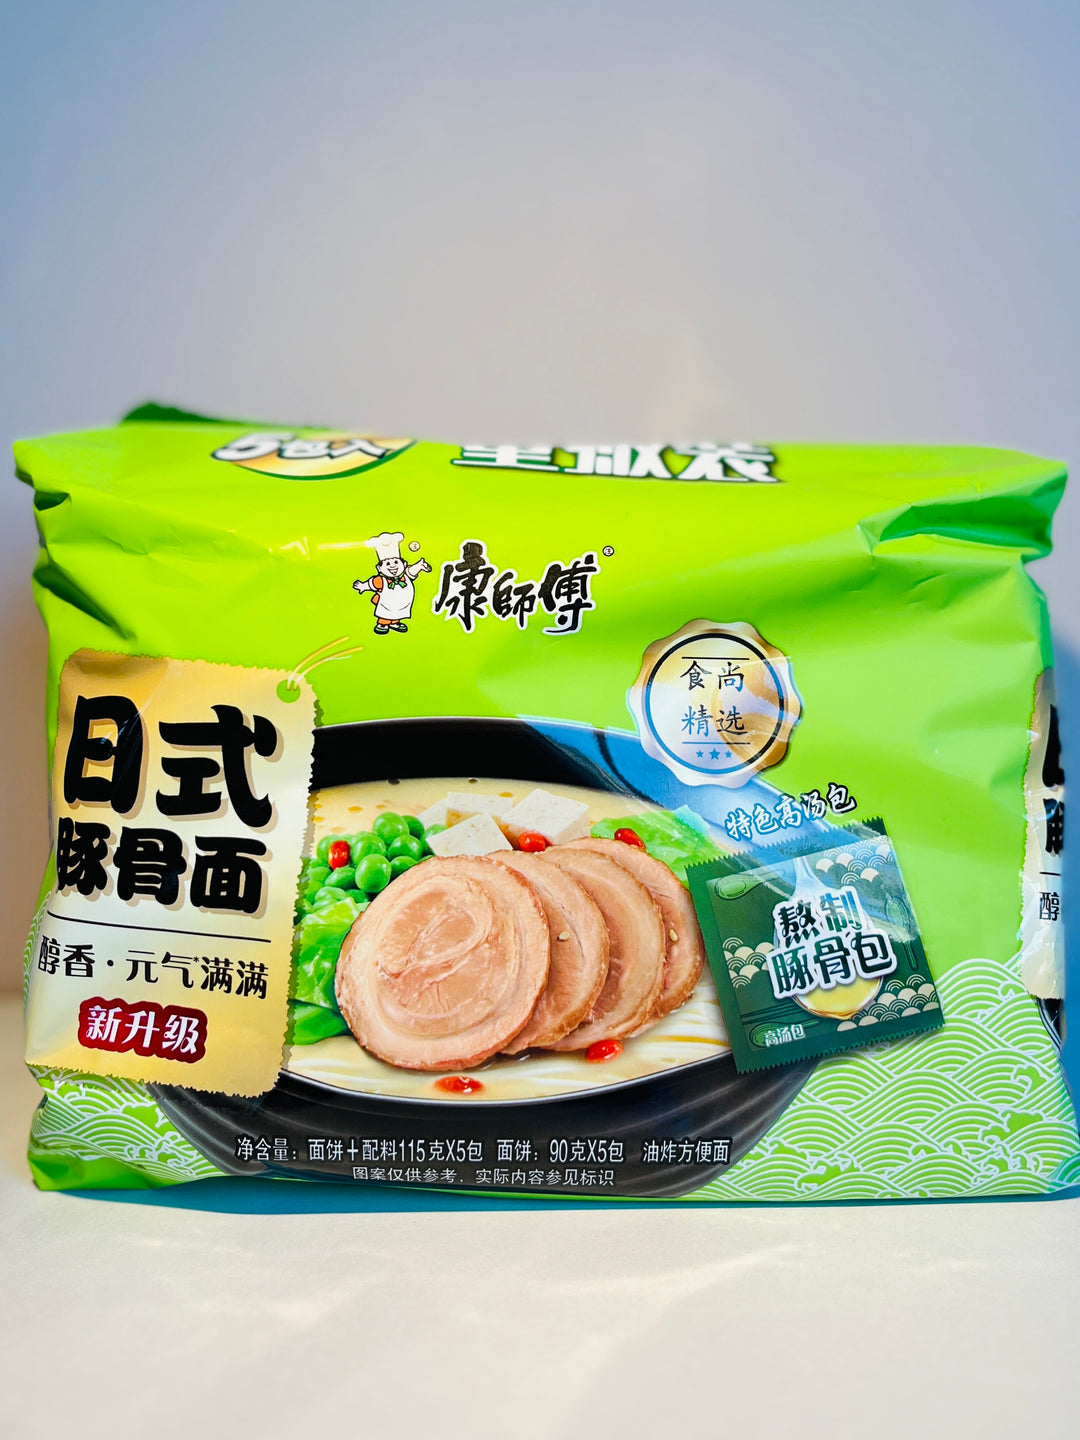 康师傅日式豚骨5pcks 510g Master Kang Artificial Japanese Style Pork Flavour